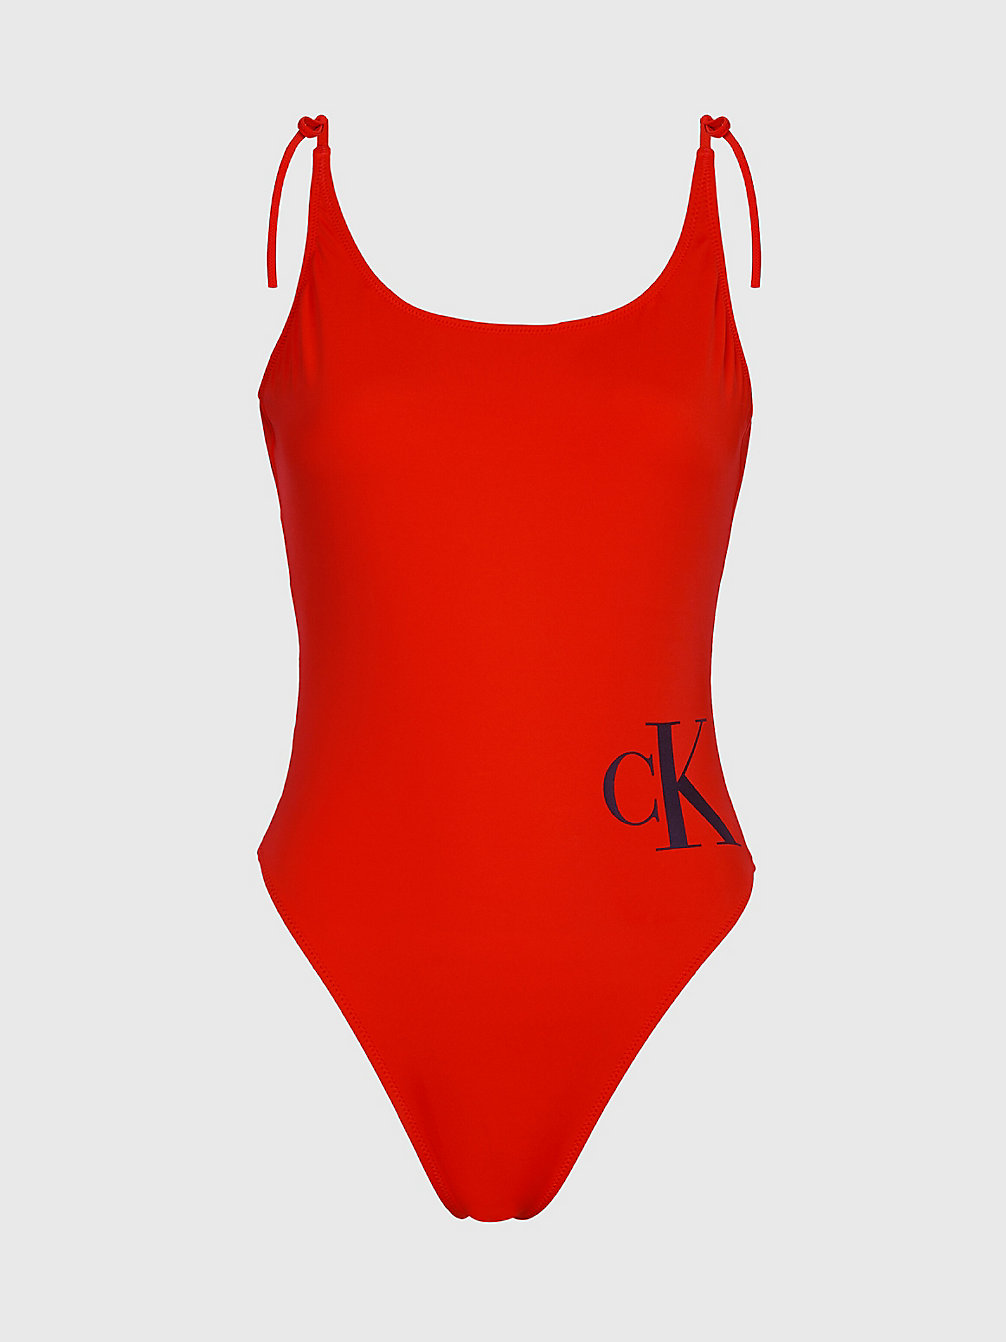 CAJUN RED > Zestaw Prezentowy Ze Strojem Kąpielowym, Opaską Na Głowę I Ręcznikiem > undefined Kobiety - Calvin Klein